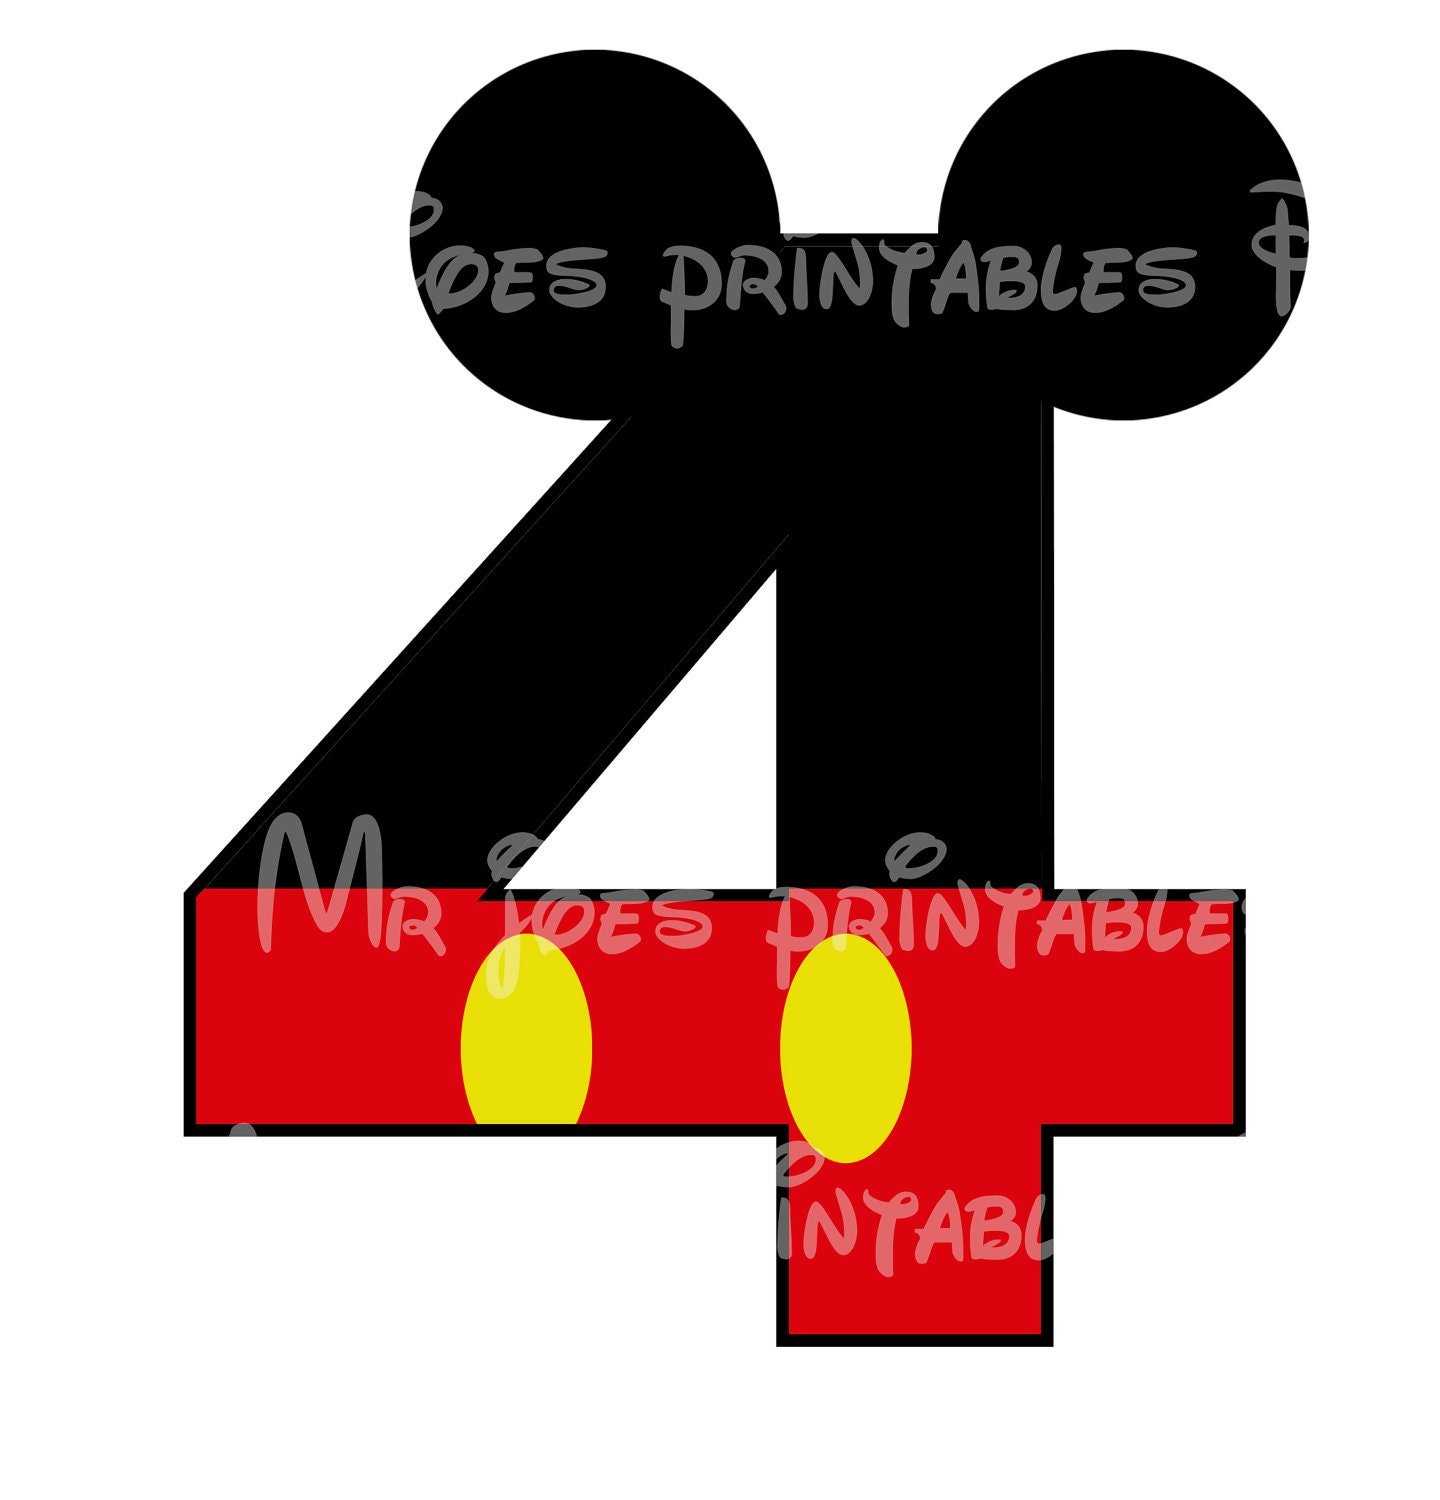 Disney Pin Serial Number